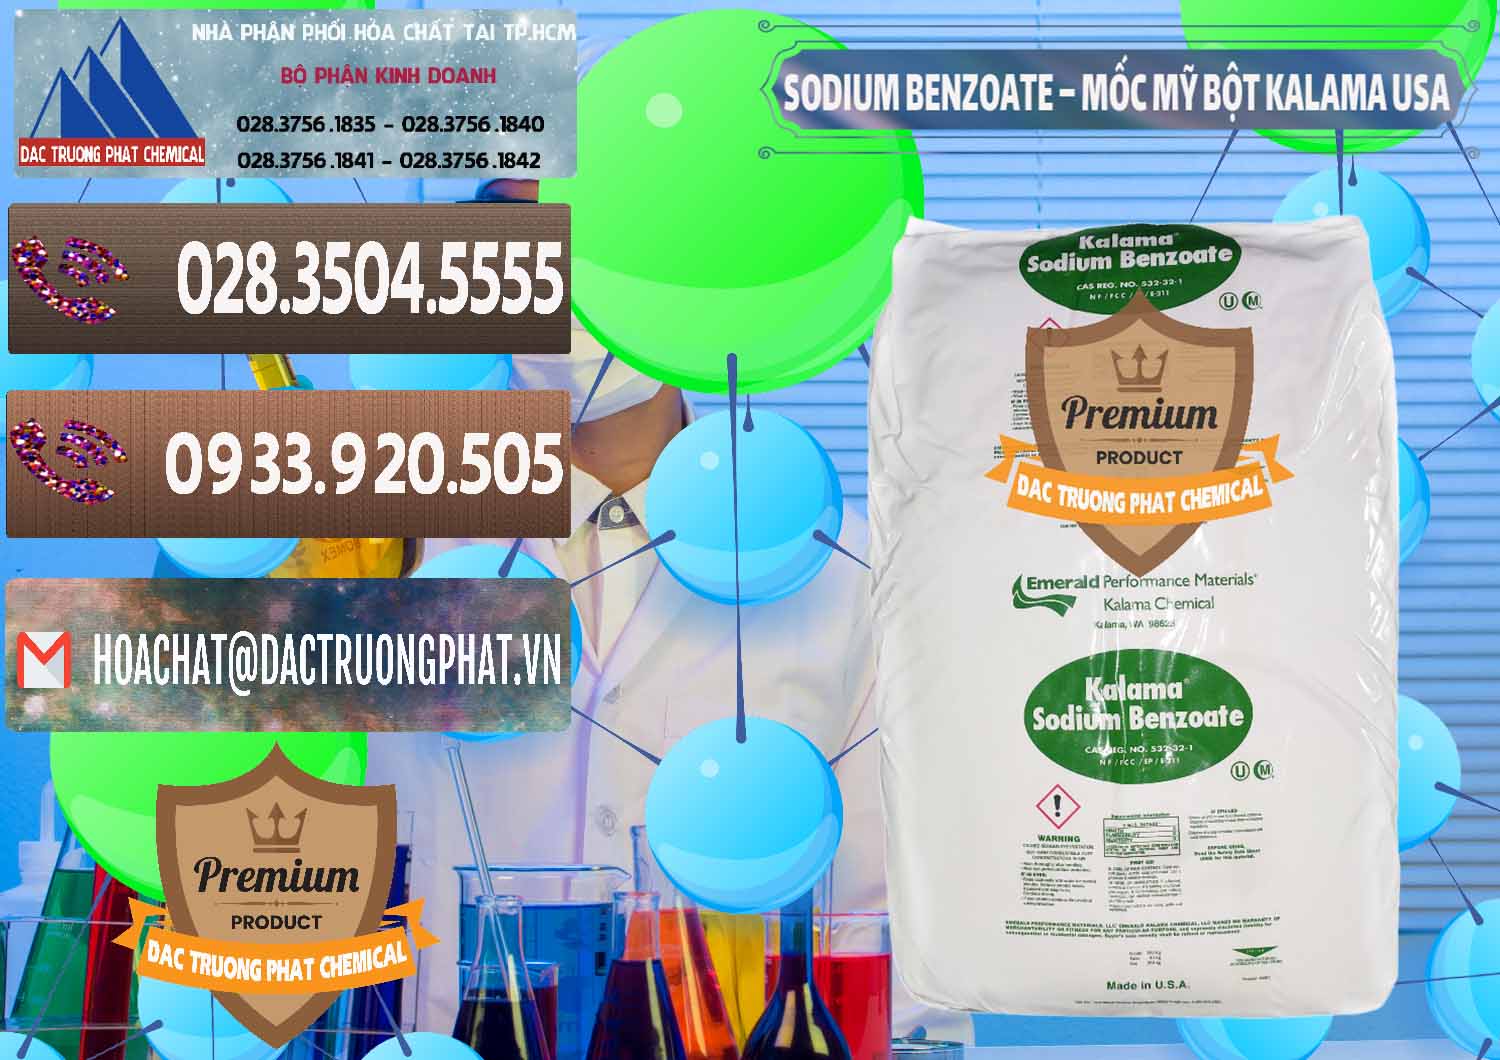 Nhà phân phối & bán Sodium Benzoate - Mốc Bột Kalama Food Grade Mỹ Usa - 0136 - Công ty chuyên kinh doanh và phân phối hóa chất tại TP.HCM - hoachatviet.net